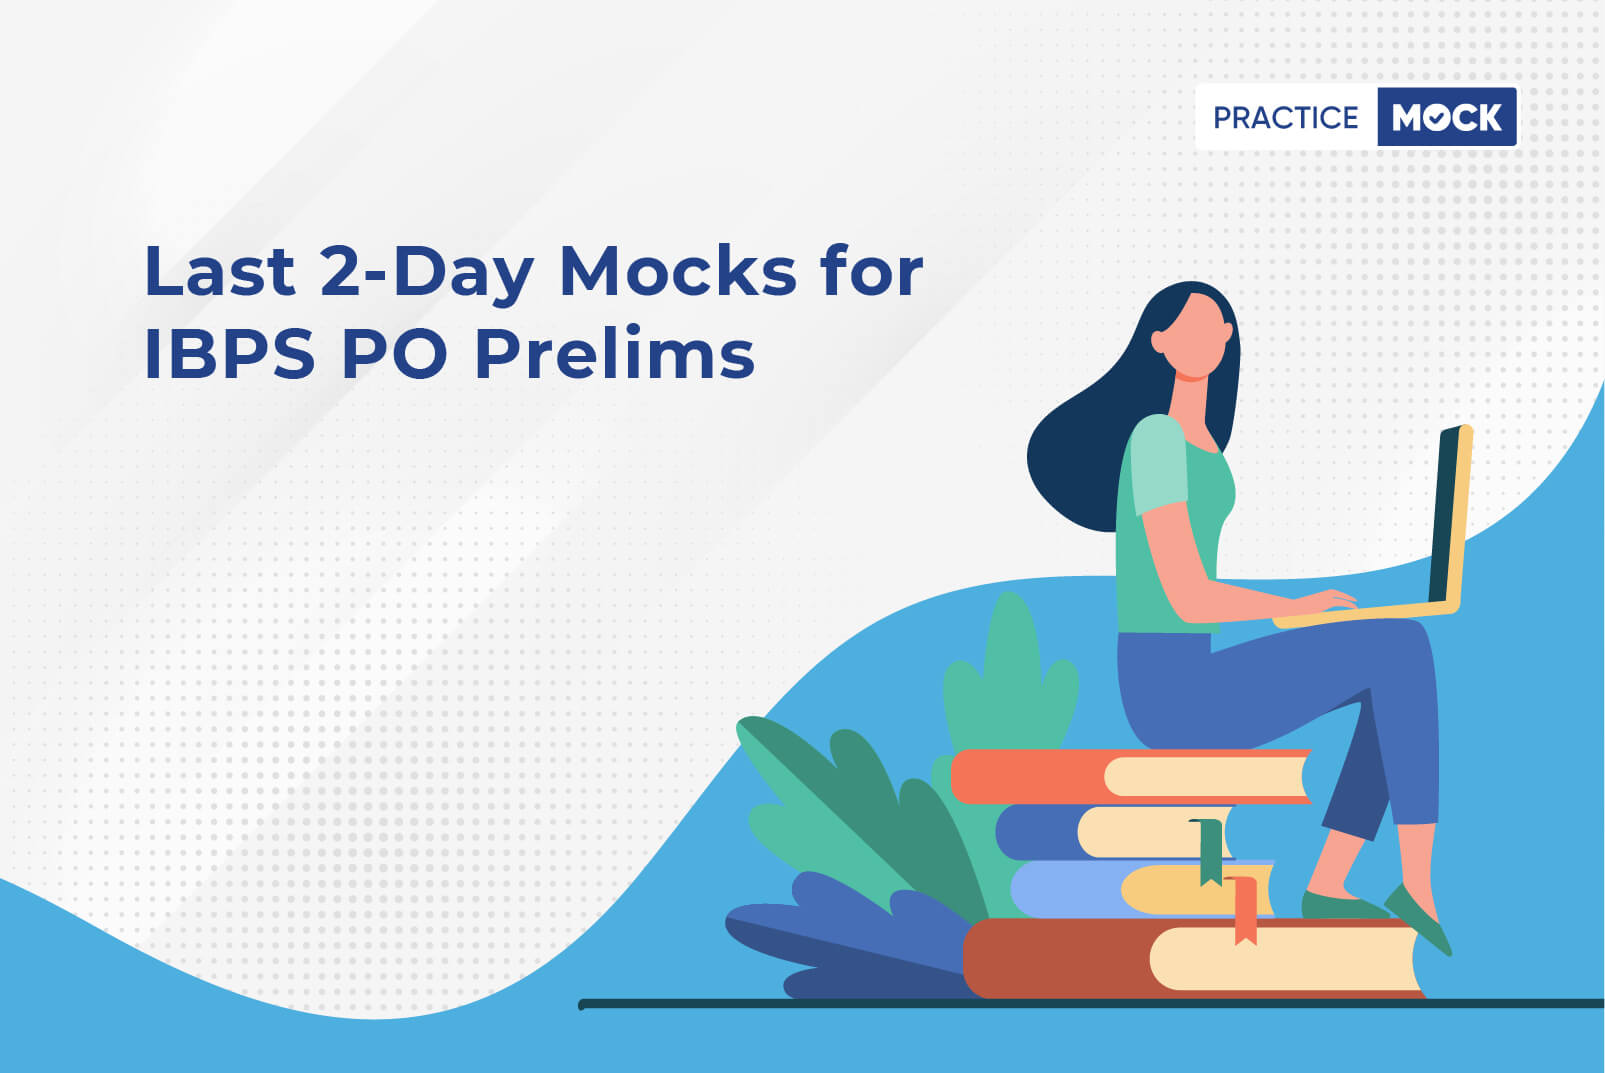 Last 2-Day Mocks for IBPS PO Prelims